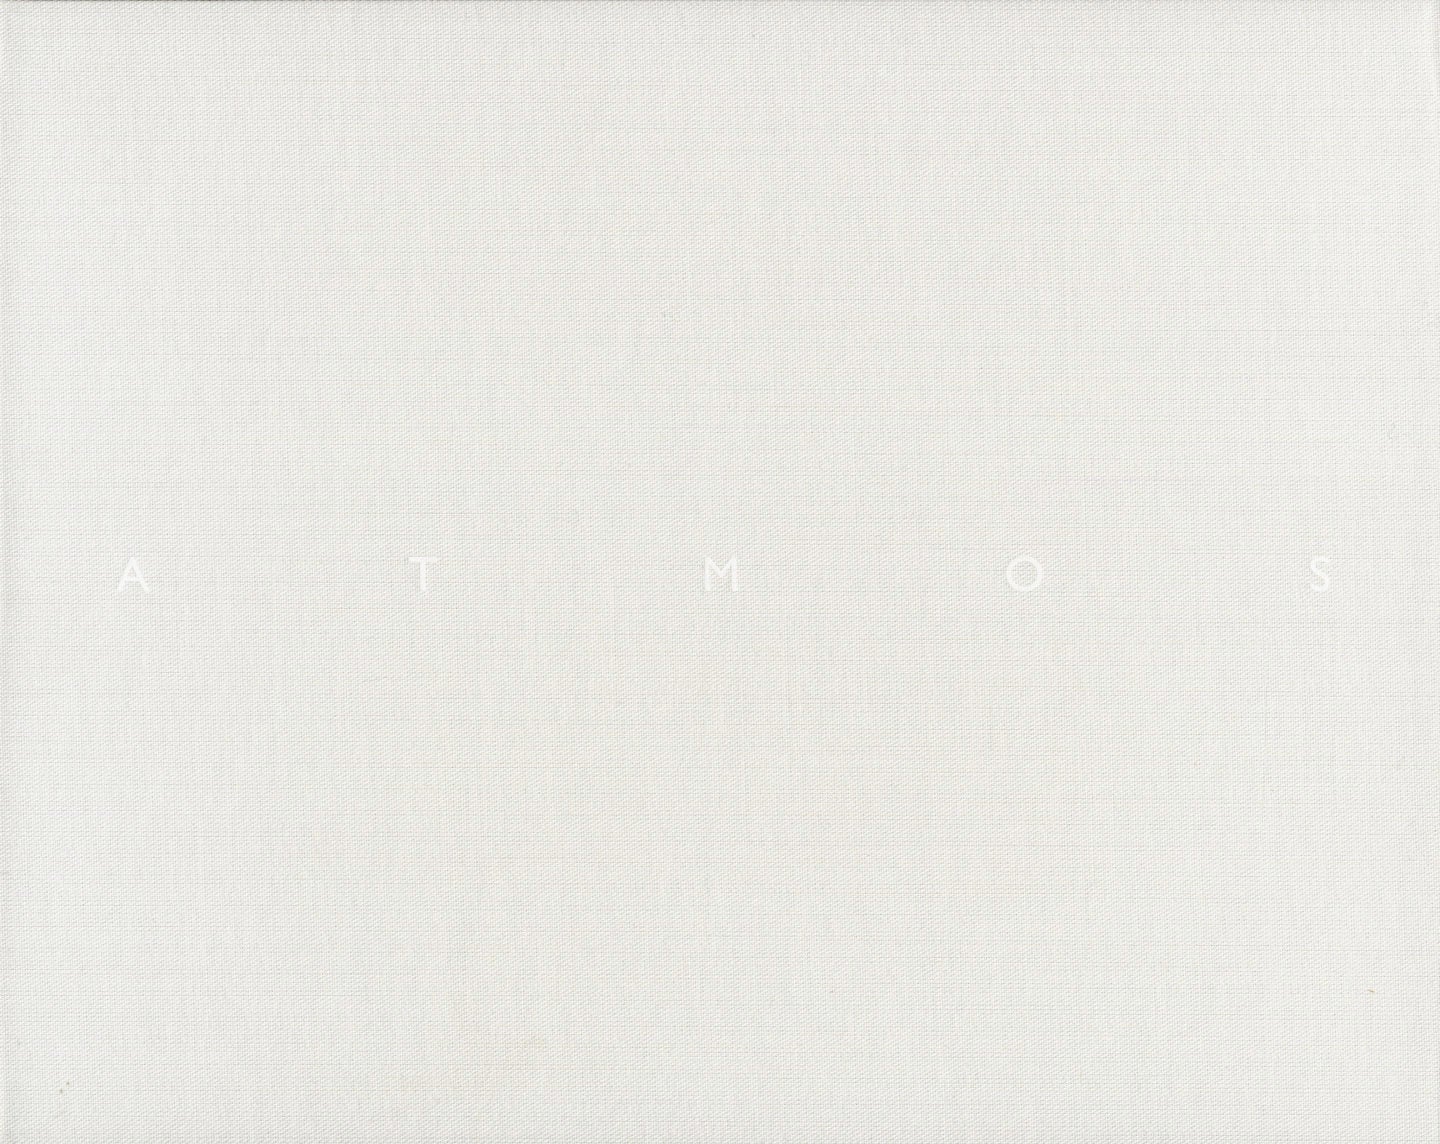 Naoya Hatakeyama: Atmos, Limited Edition [SIGNED]